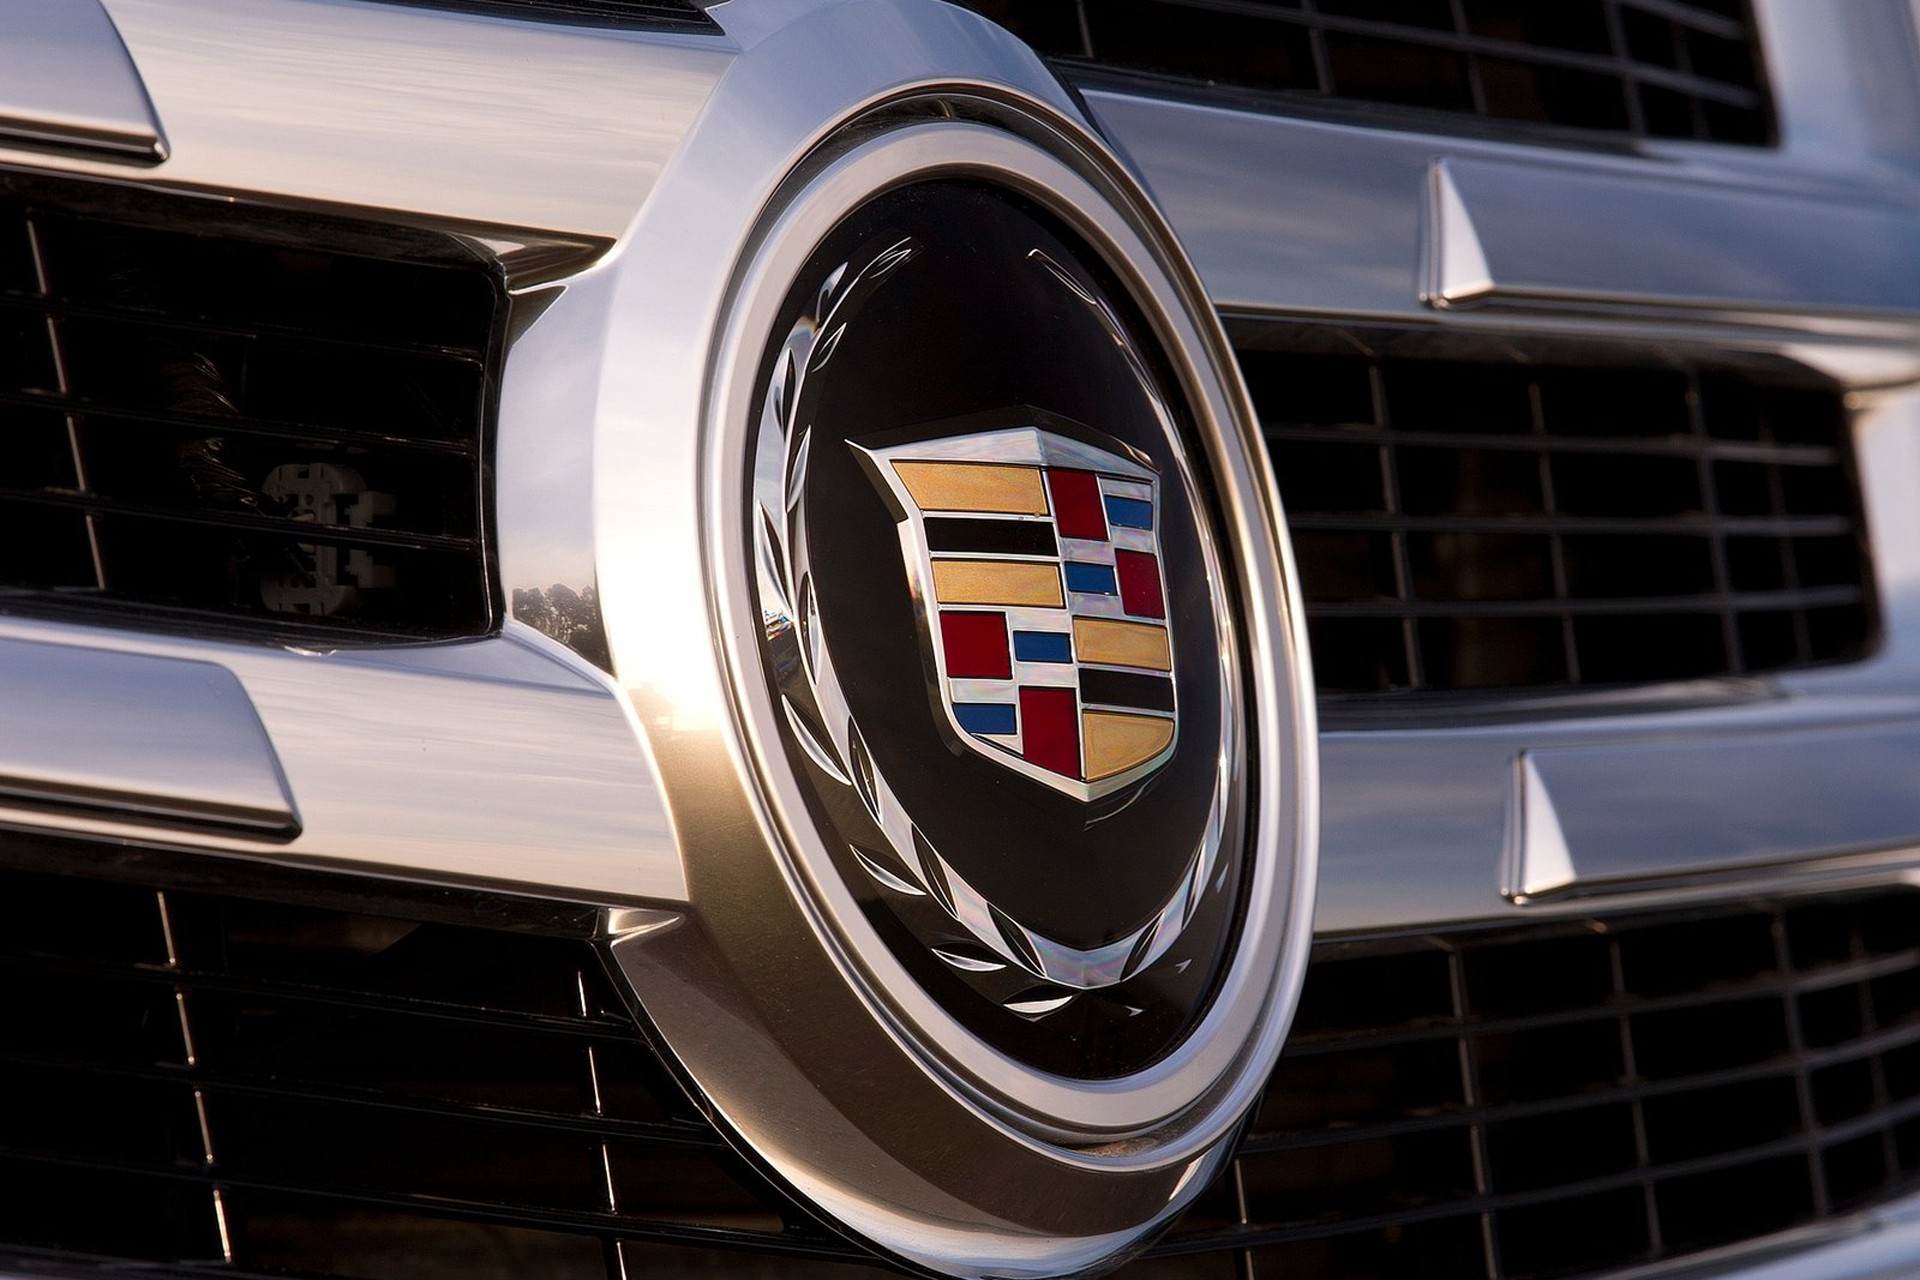 Cadillac Escalade IV 2014. Дженерал Моторс Кадиллак лого. Кадиллак gt4. Cadillac Escalade logo. Американский производитель машин